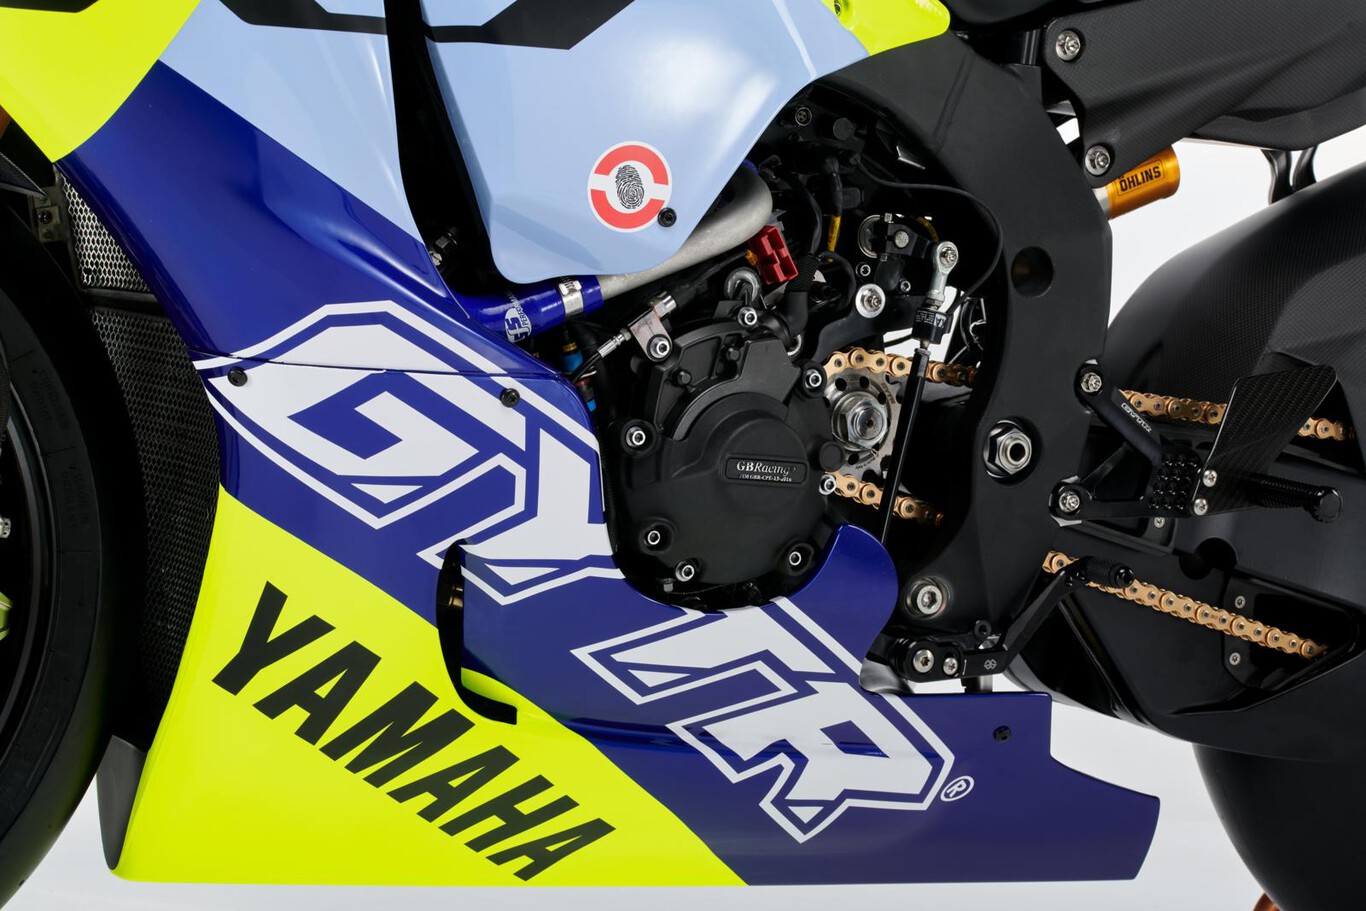 Yamaha YZR-R1 phiên bản đặc biệt vinh danh tay đua Valentino Rossi 2022-Yamaha-YZF-R1-GYTR-VR46-Tribute (6).jpeg